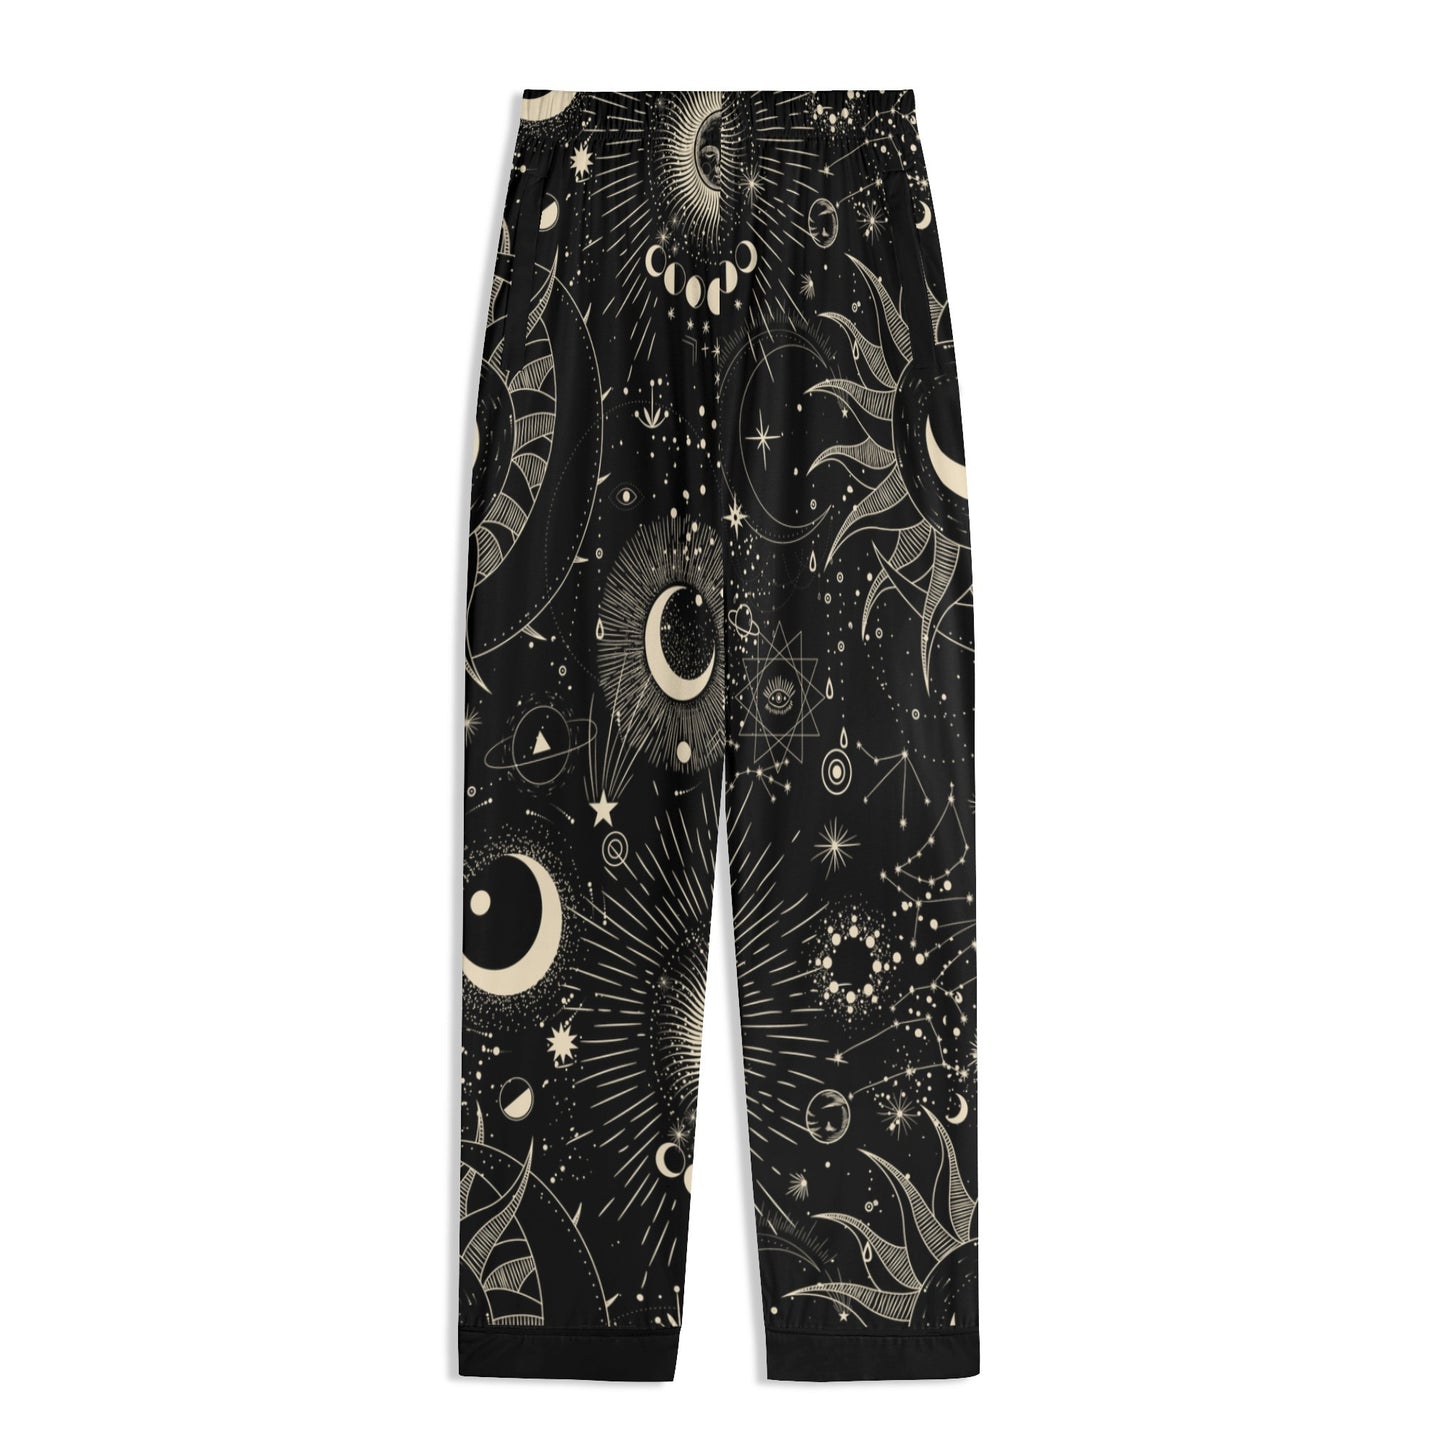 Stardust Unisex Nightwear Pajama Set